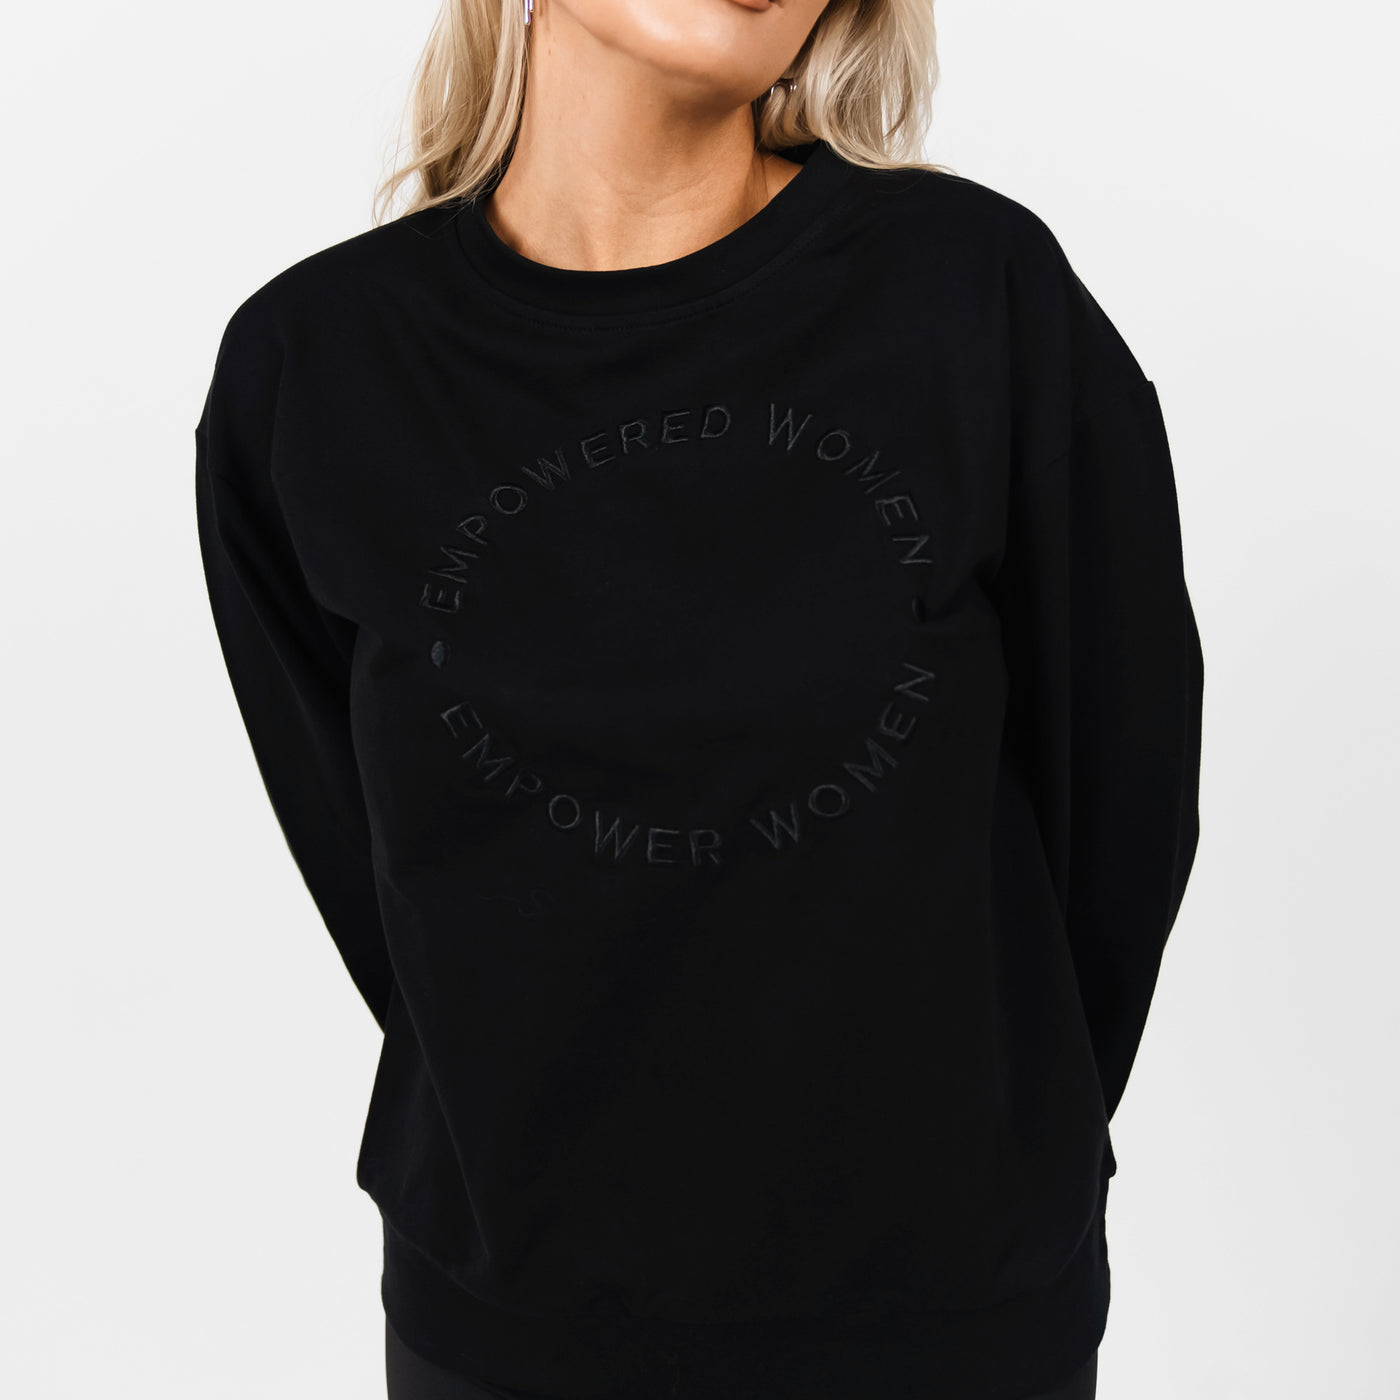 Empowered Women Crewneck Sweatshirt